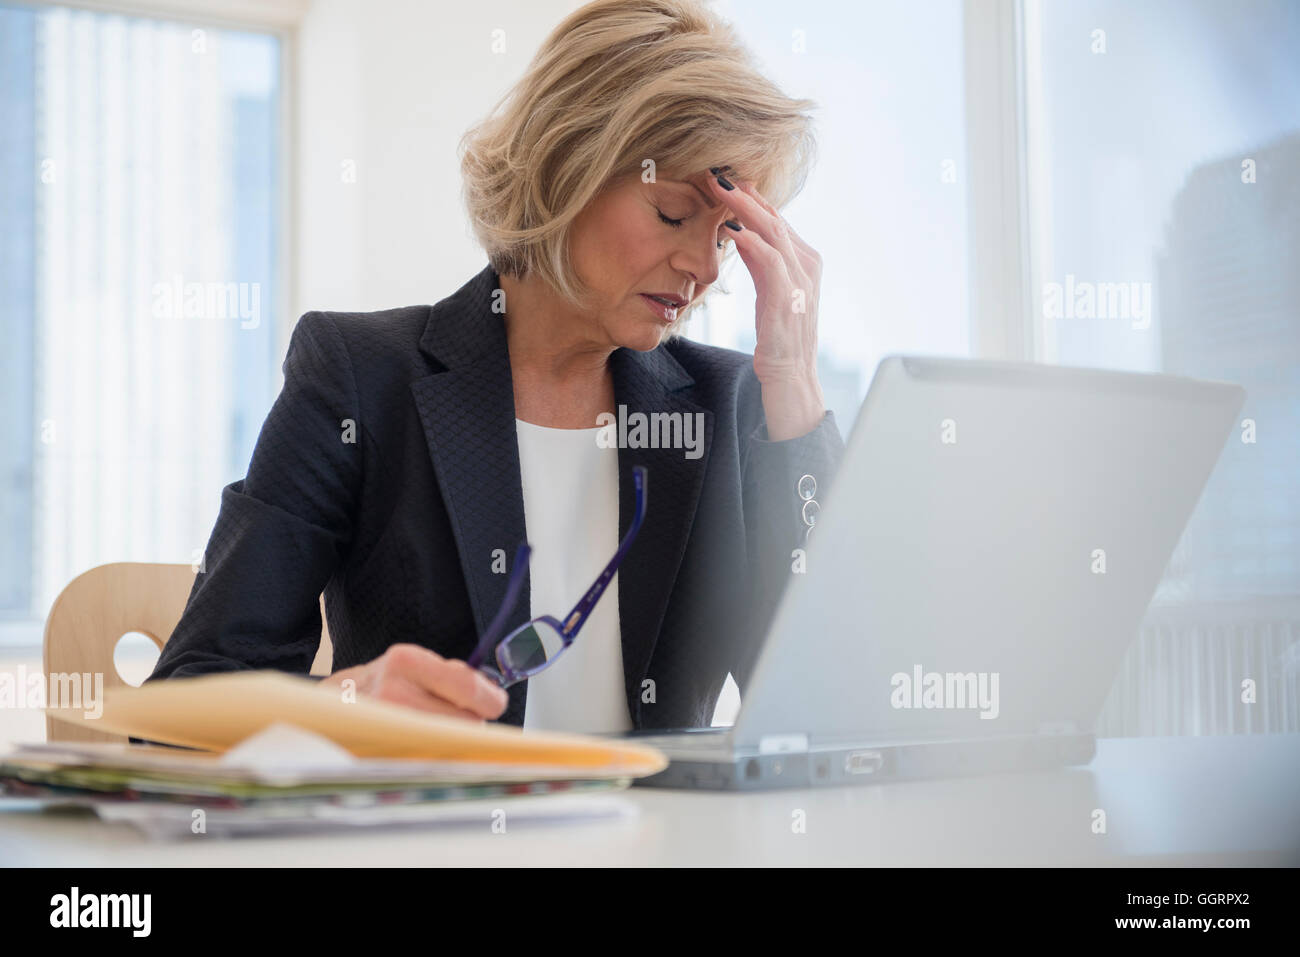 Caucasian businesswoman avec maux using laptop Banque D'Images